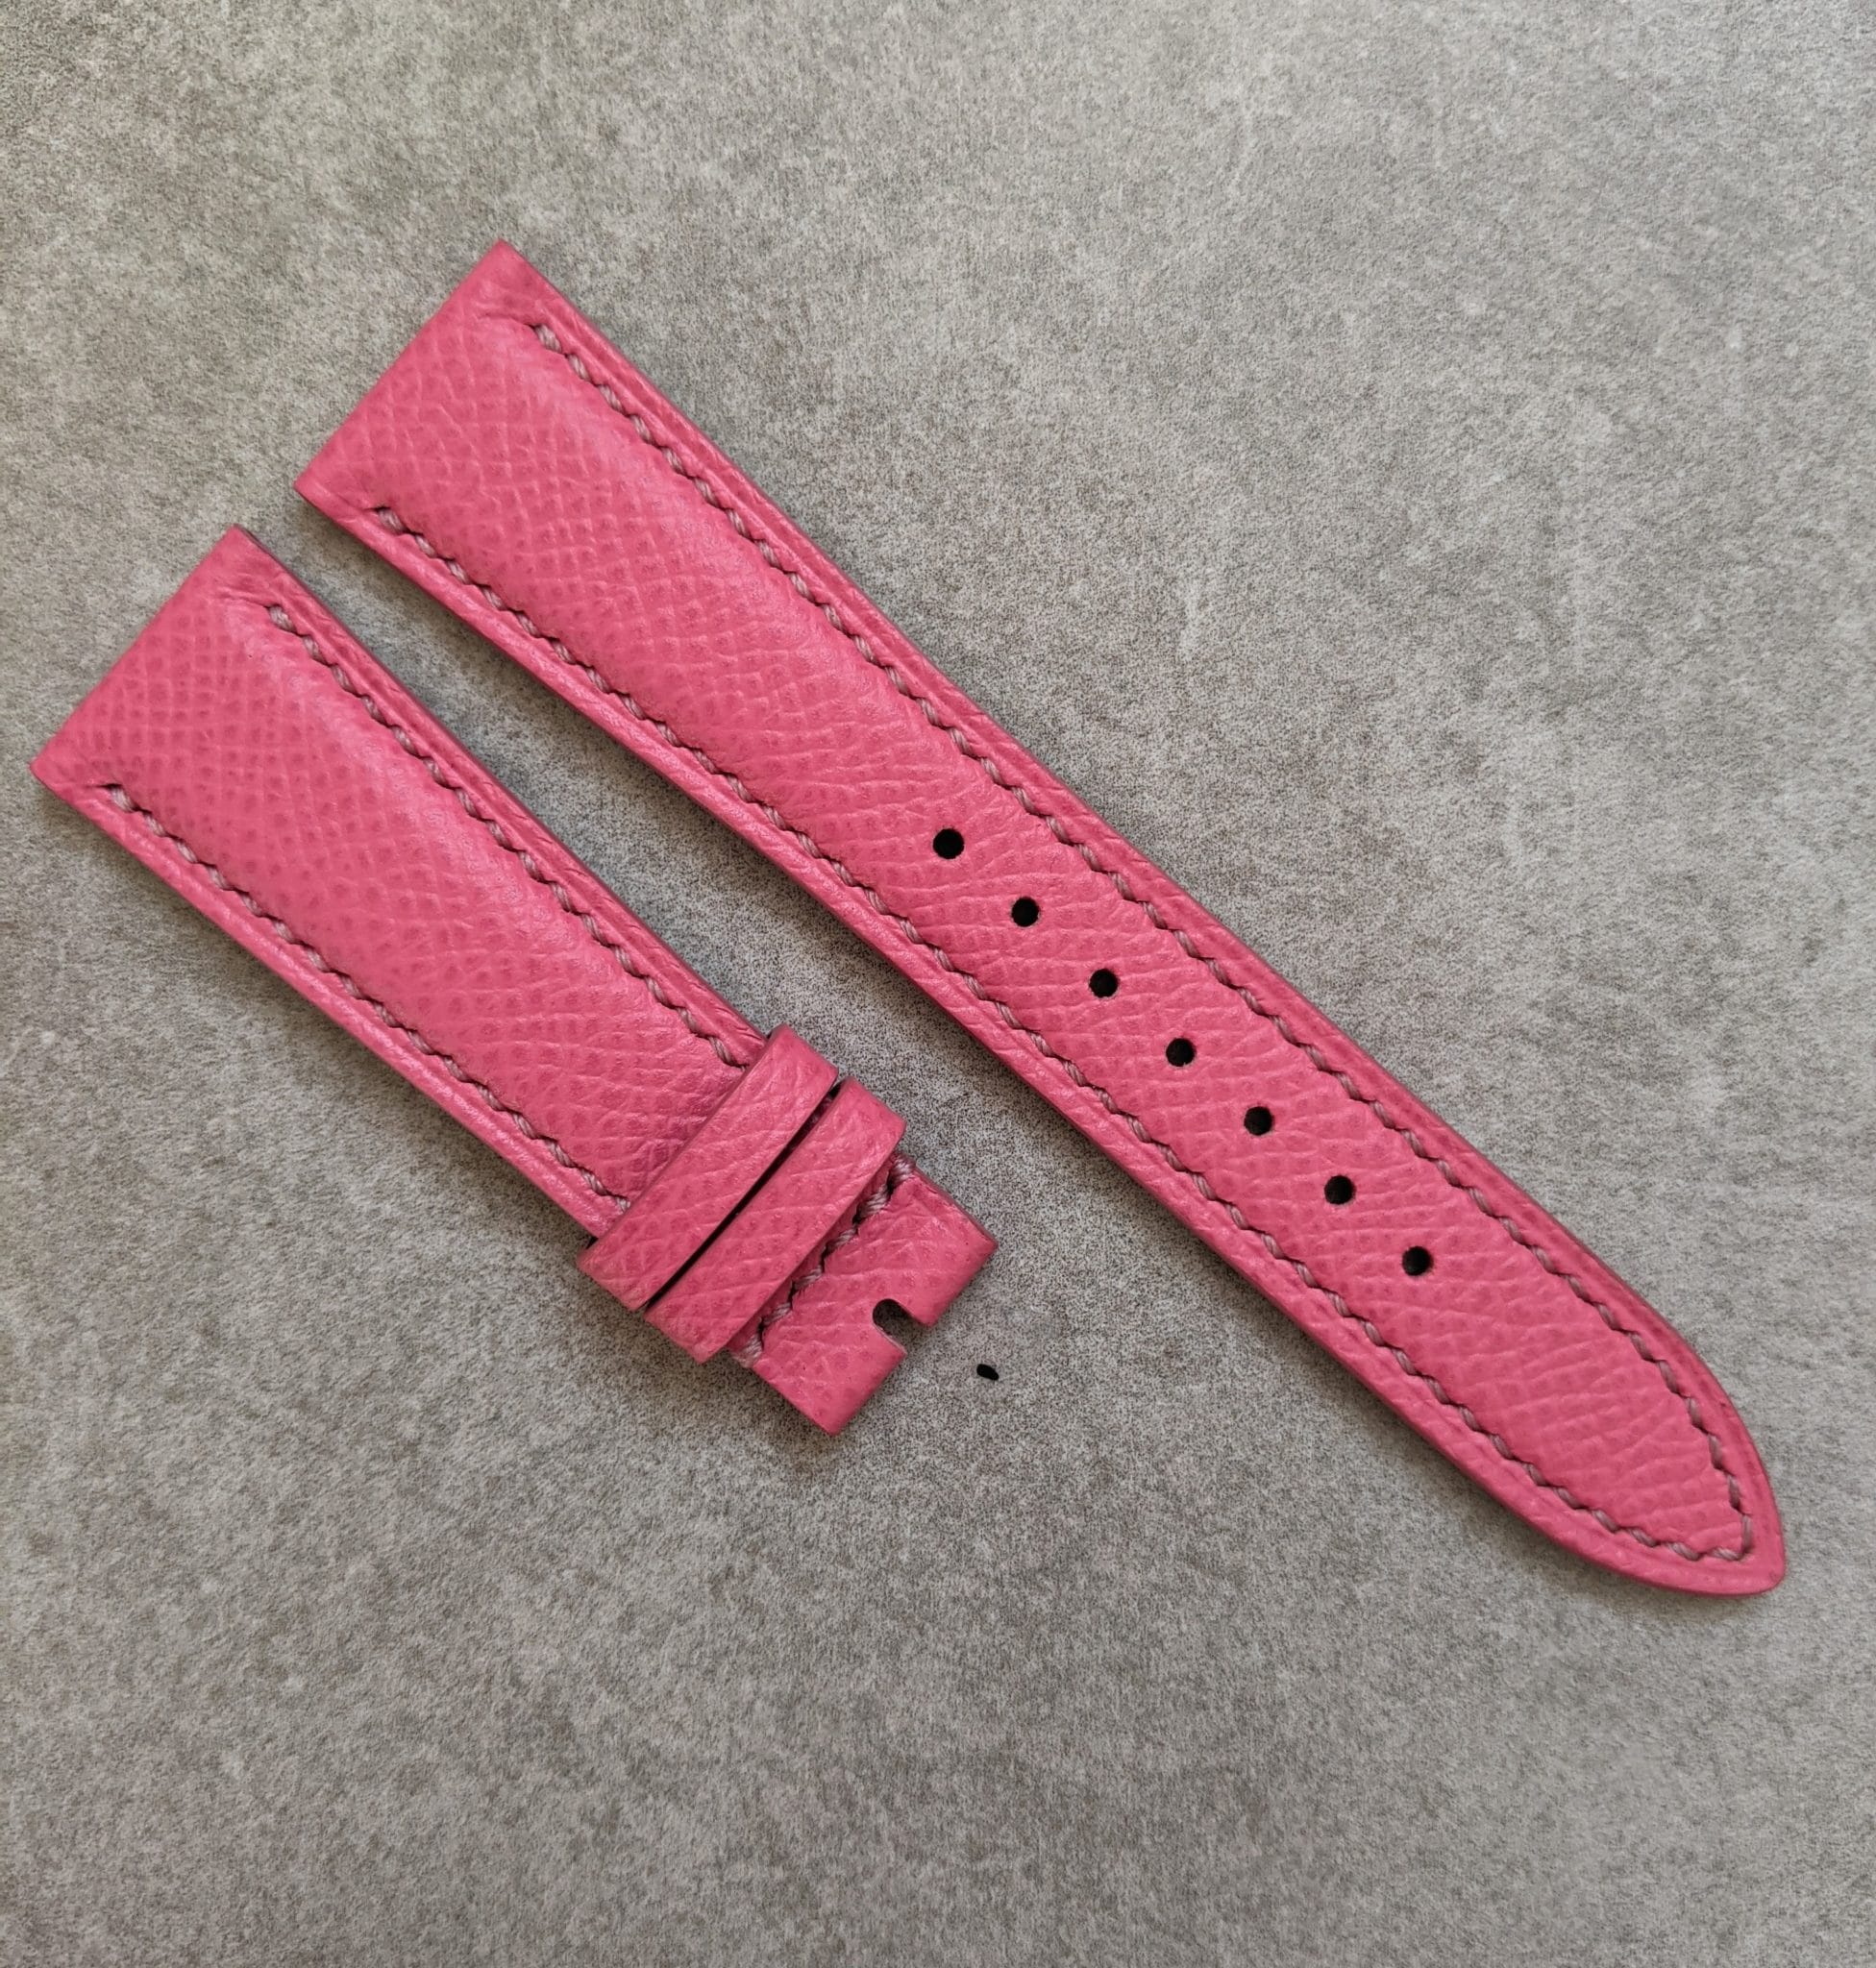 luxury-pink-watch-strap